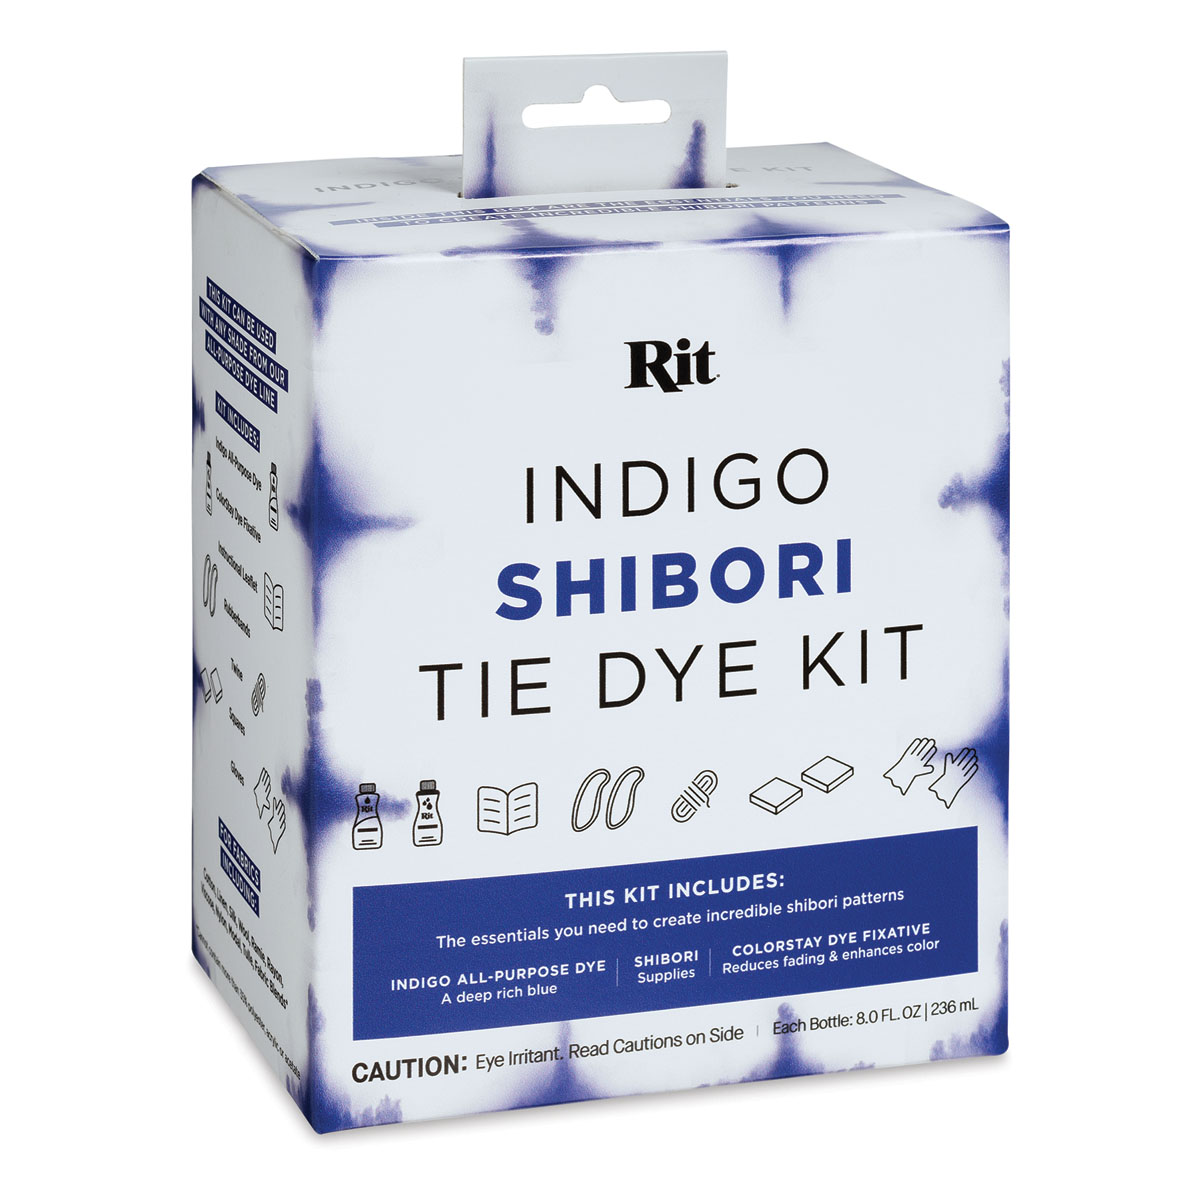 At-Home Indigo Dye Kit